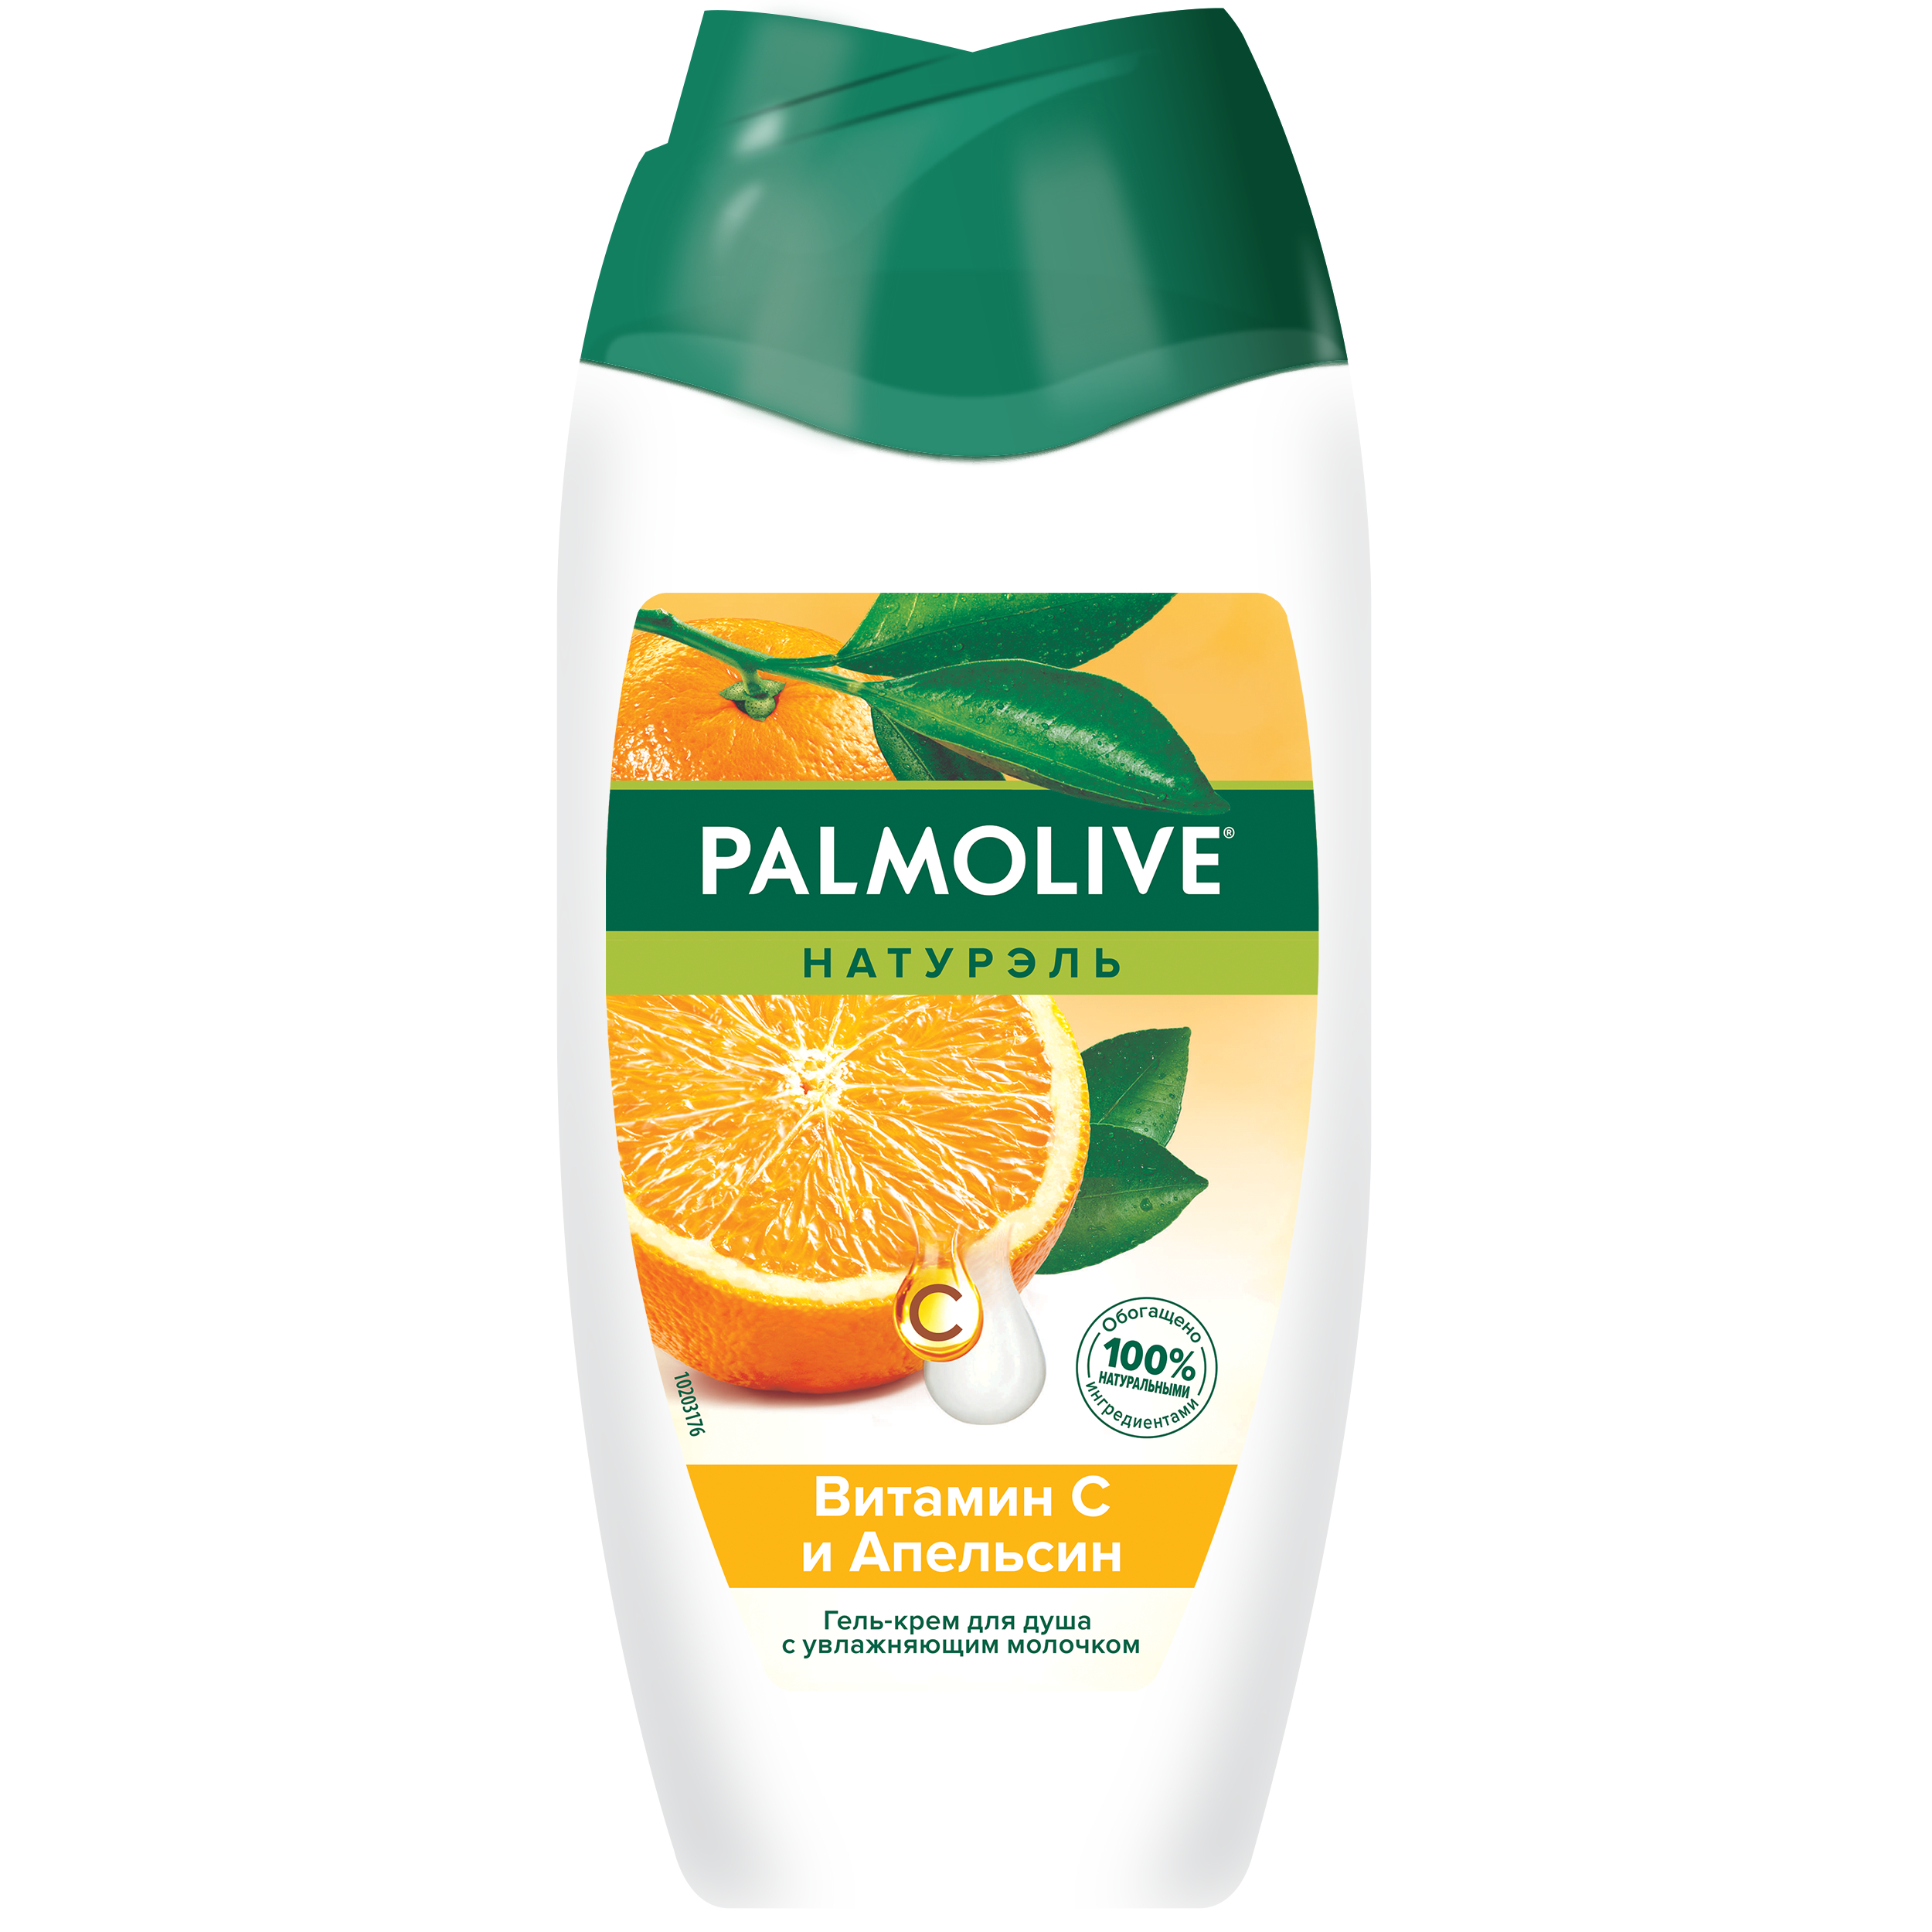 Гель-крем для душа Palmolive Натурэль витамин С и апельсин, с увлажняющим молочком 250 мл жидкое крем мыло для рук palmolive натурэль витамин b и гранат 300мл